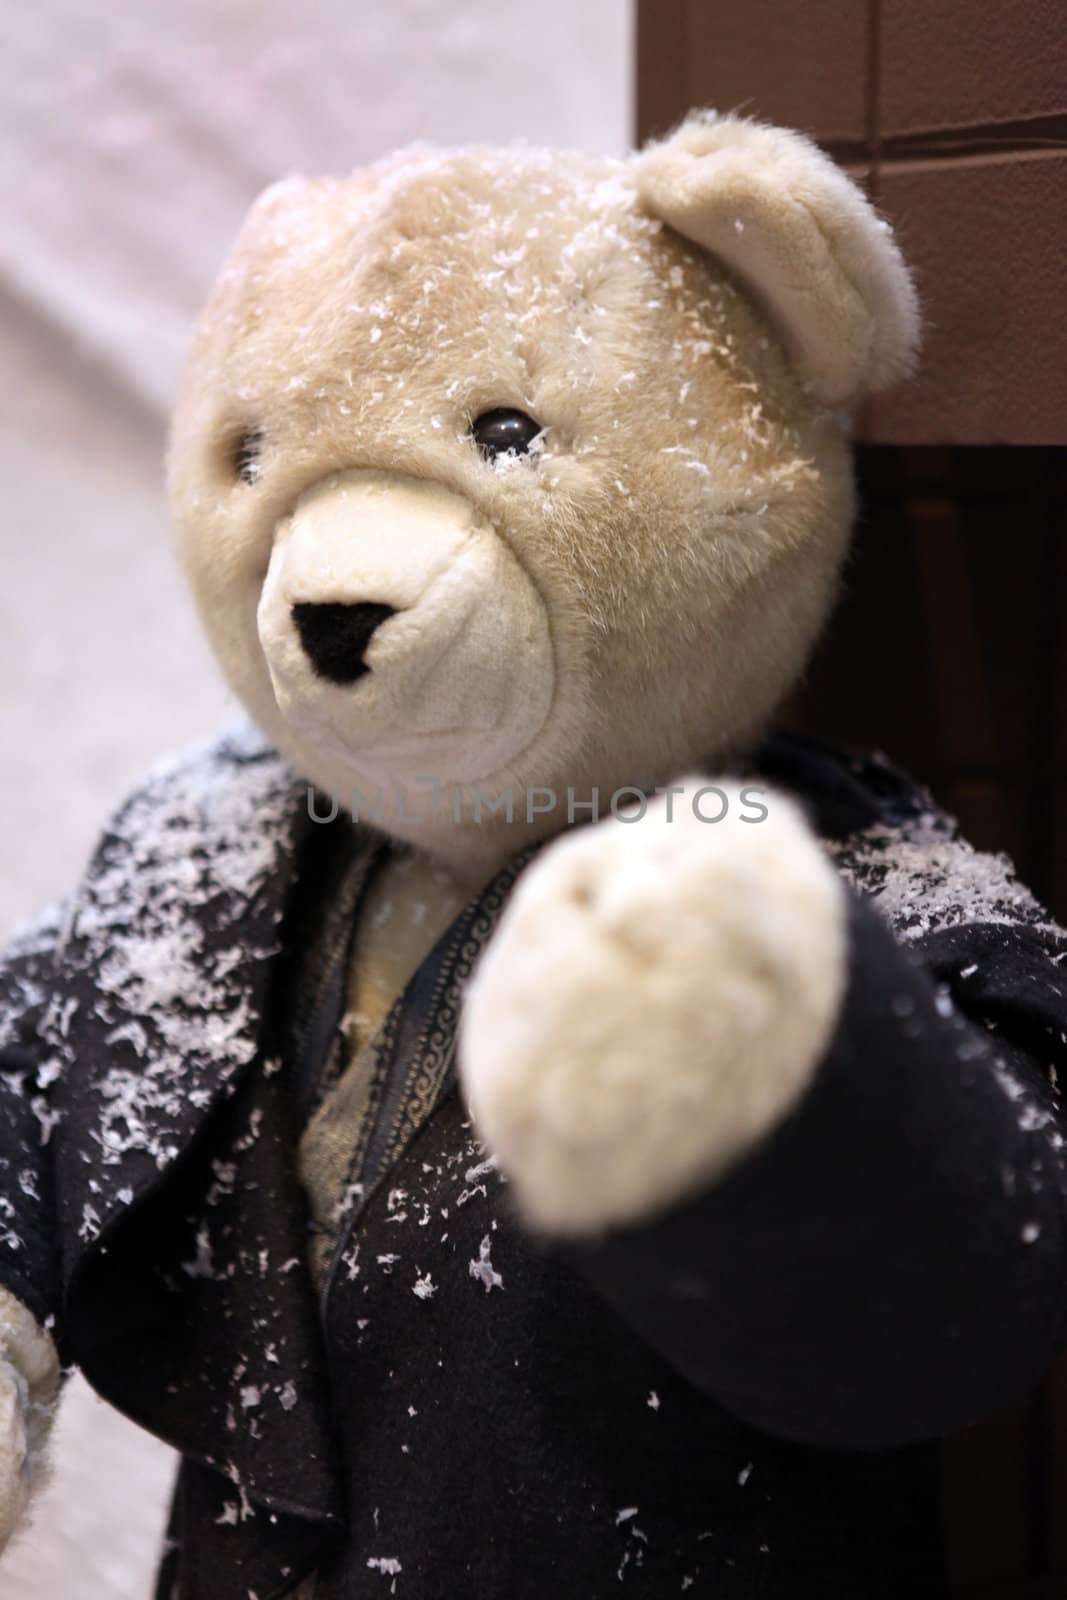 Teddy bear wearing jacket in the snow